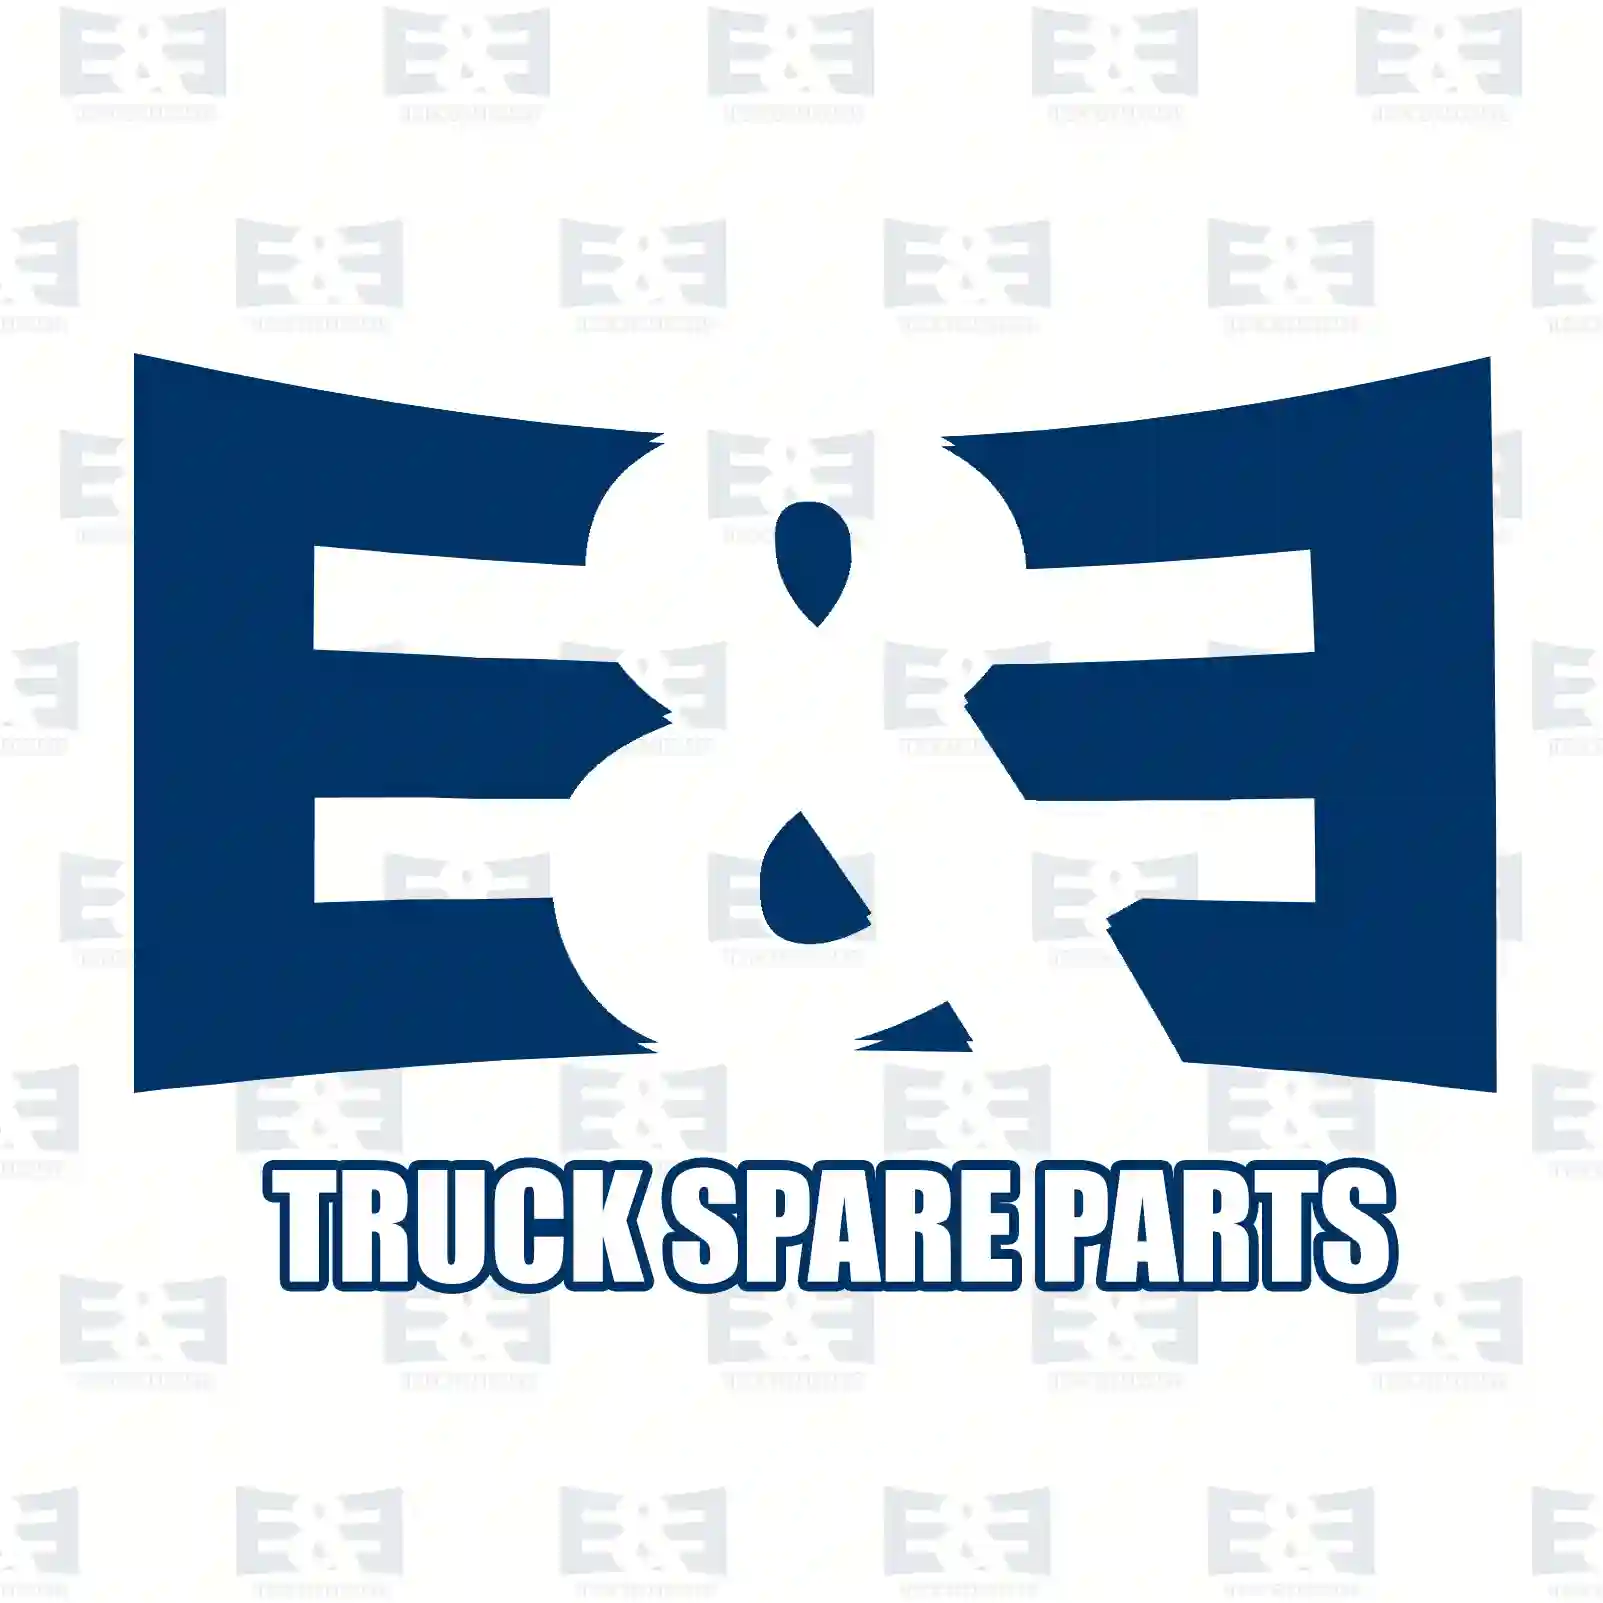 Cover, right, 2E2289292, 2324349 ||  2E2289292 E&E Truck Spare Parts | Truck Spare Parts, Auotomotive Spare Parts Cover, right, 2E2289292, 2324349 ||  2E2289292 E&E Truck Spare Parts | Truck Spare Parts, Auotomotive Spare Parts